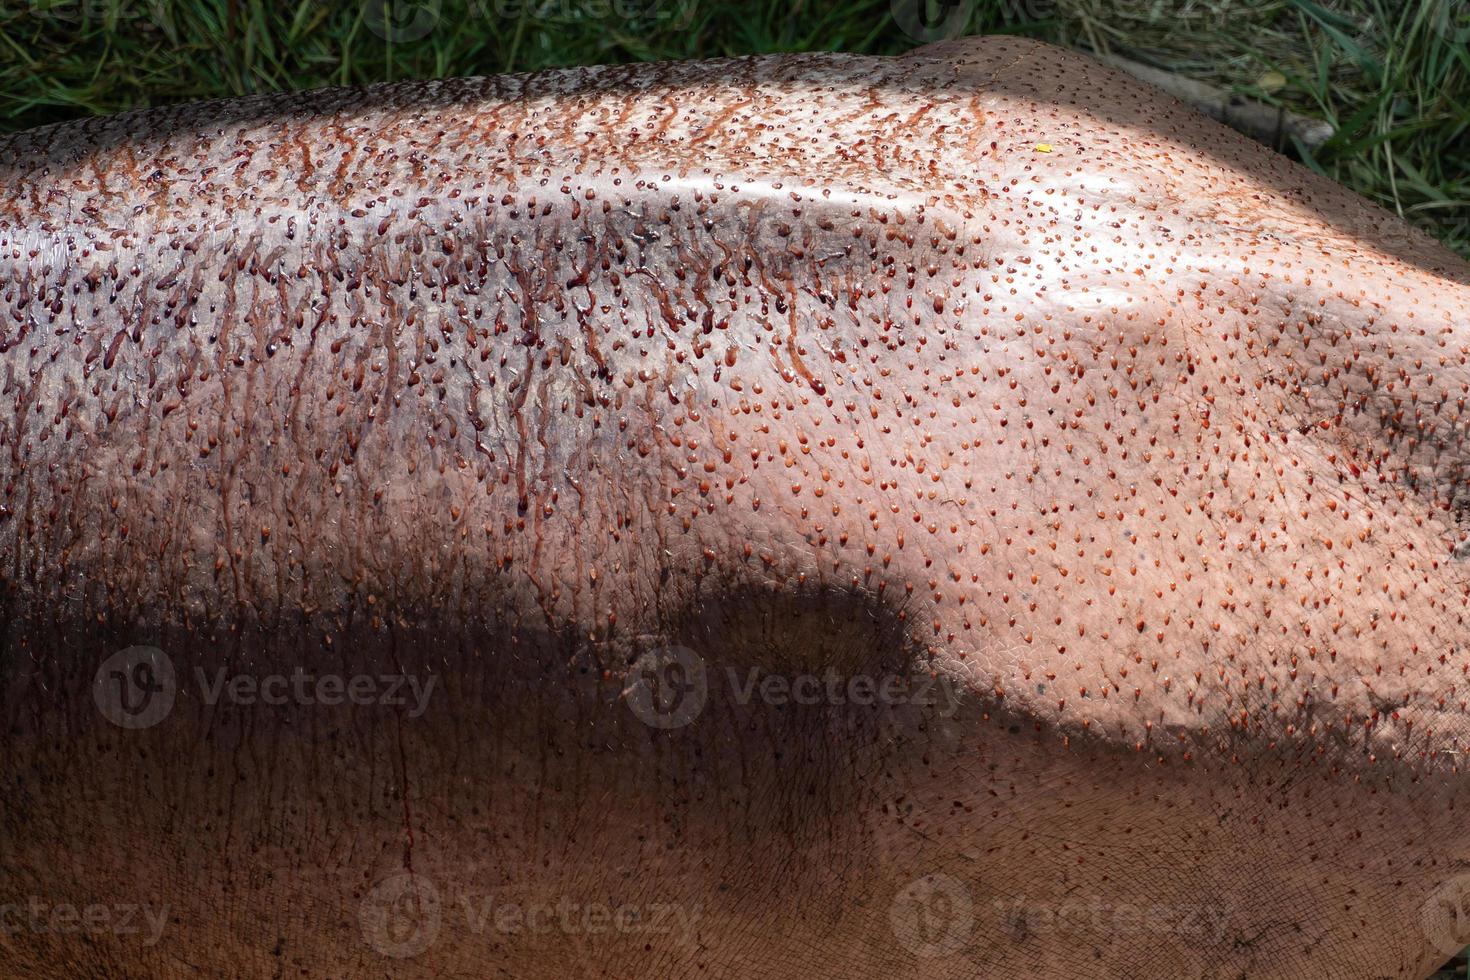 pele de hipopótamo com fina camada de líquido rosa claro no corpo, uma substância rosa que atua como protetor solar natural. hipopótamo amphibius, conceito de conservação animal e proteção de ecossistemas. foto